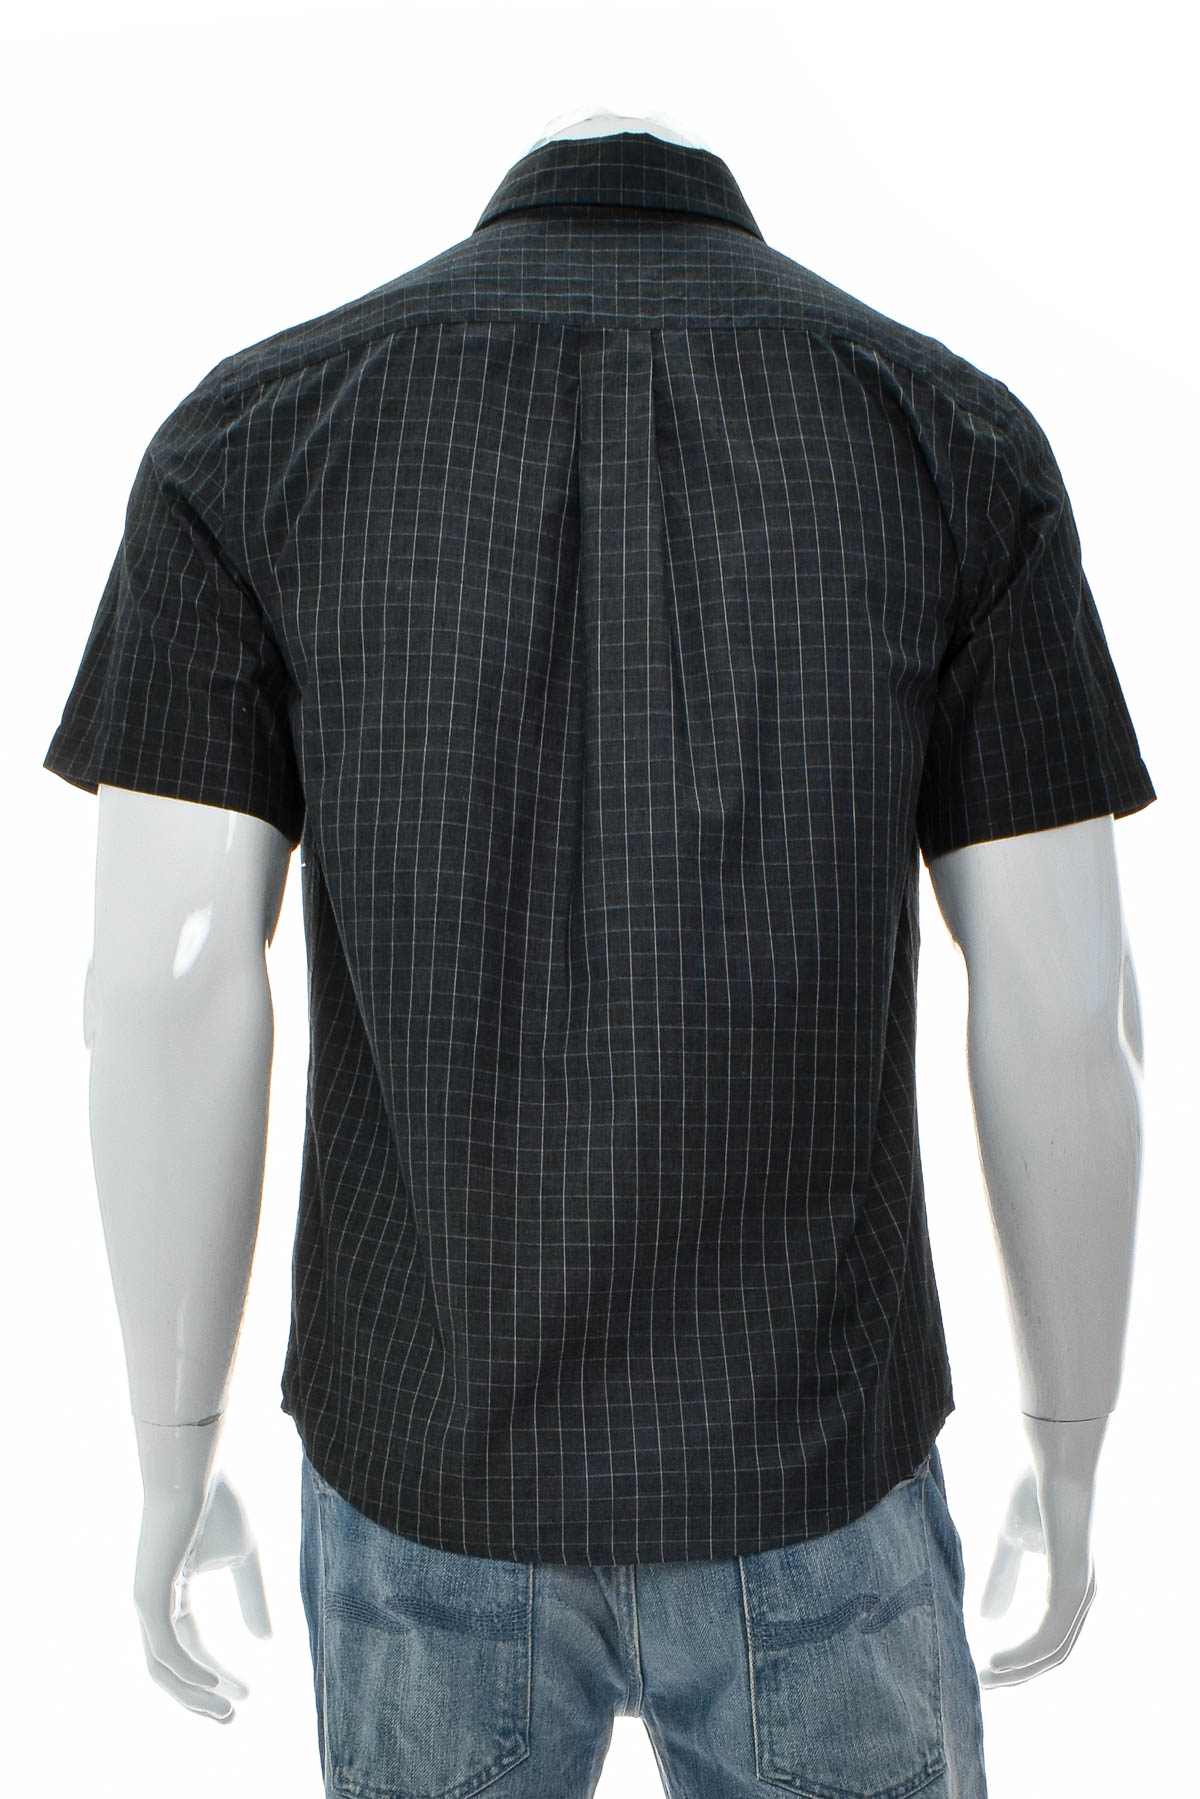 Ανδρικό πουκάμισο - Merona - 1